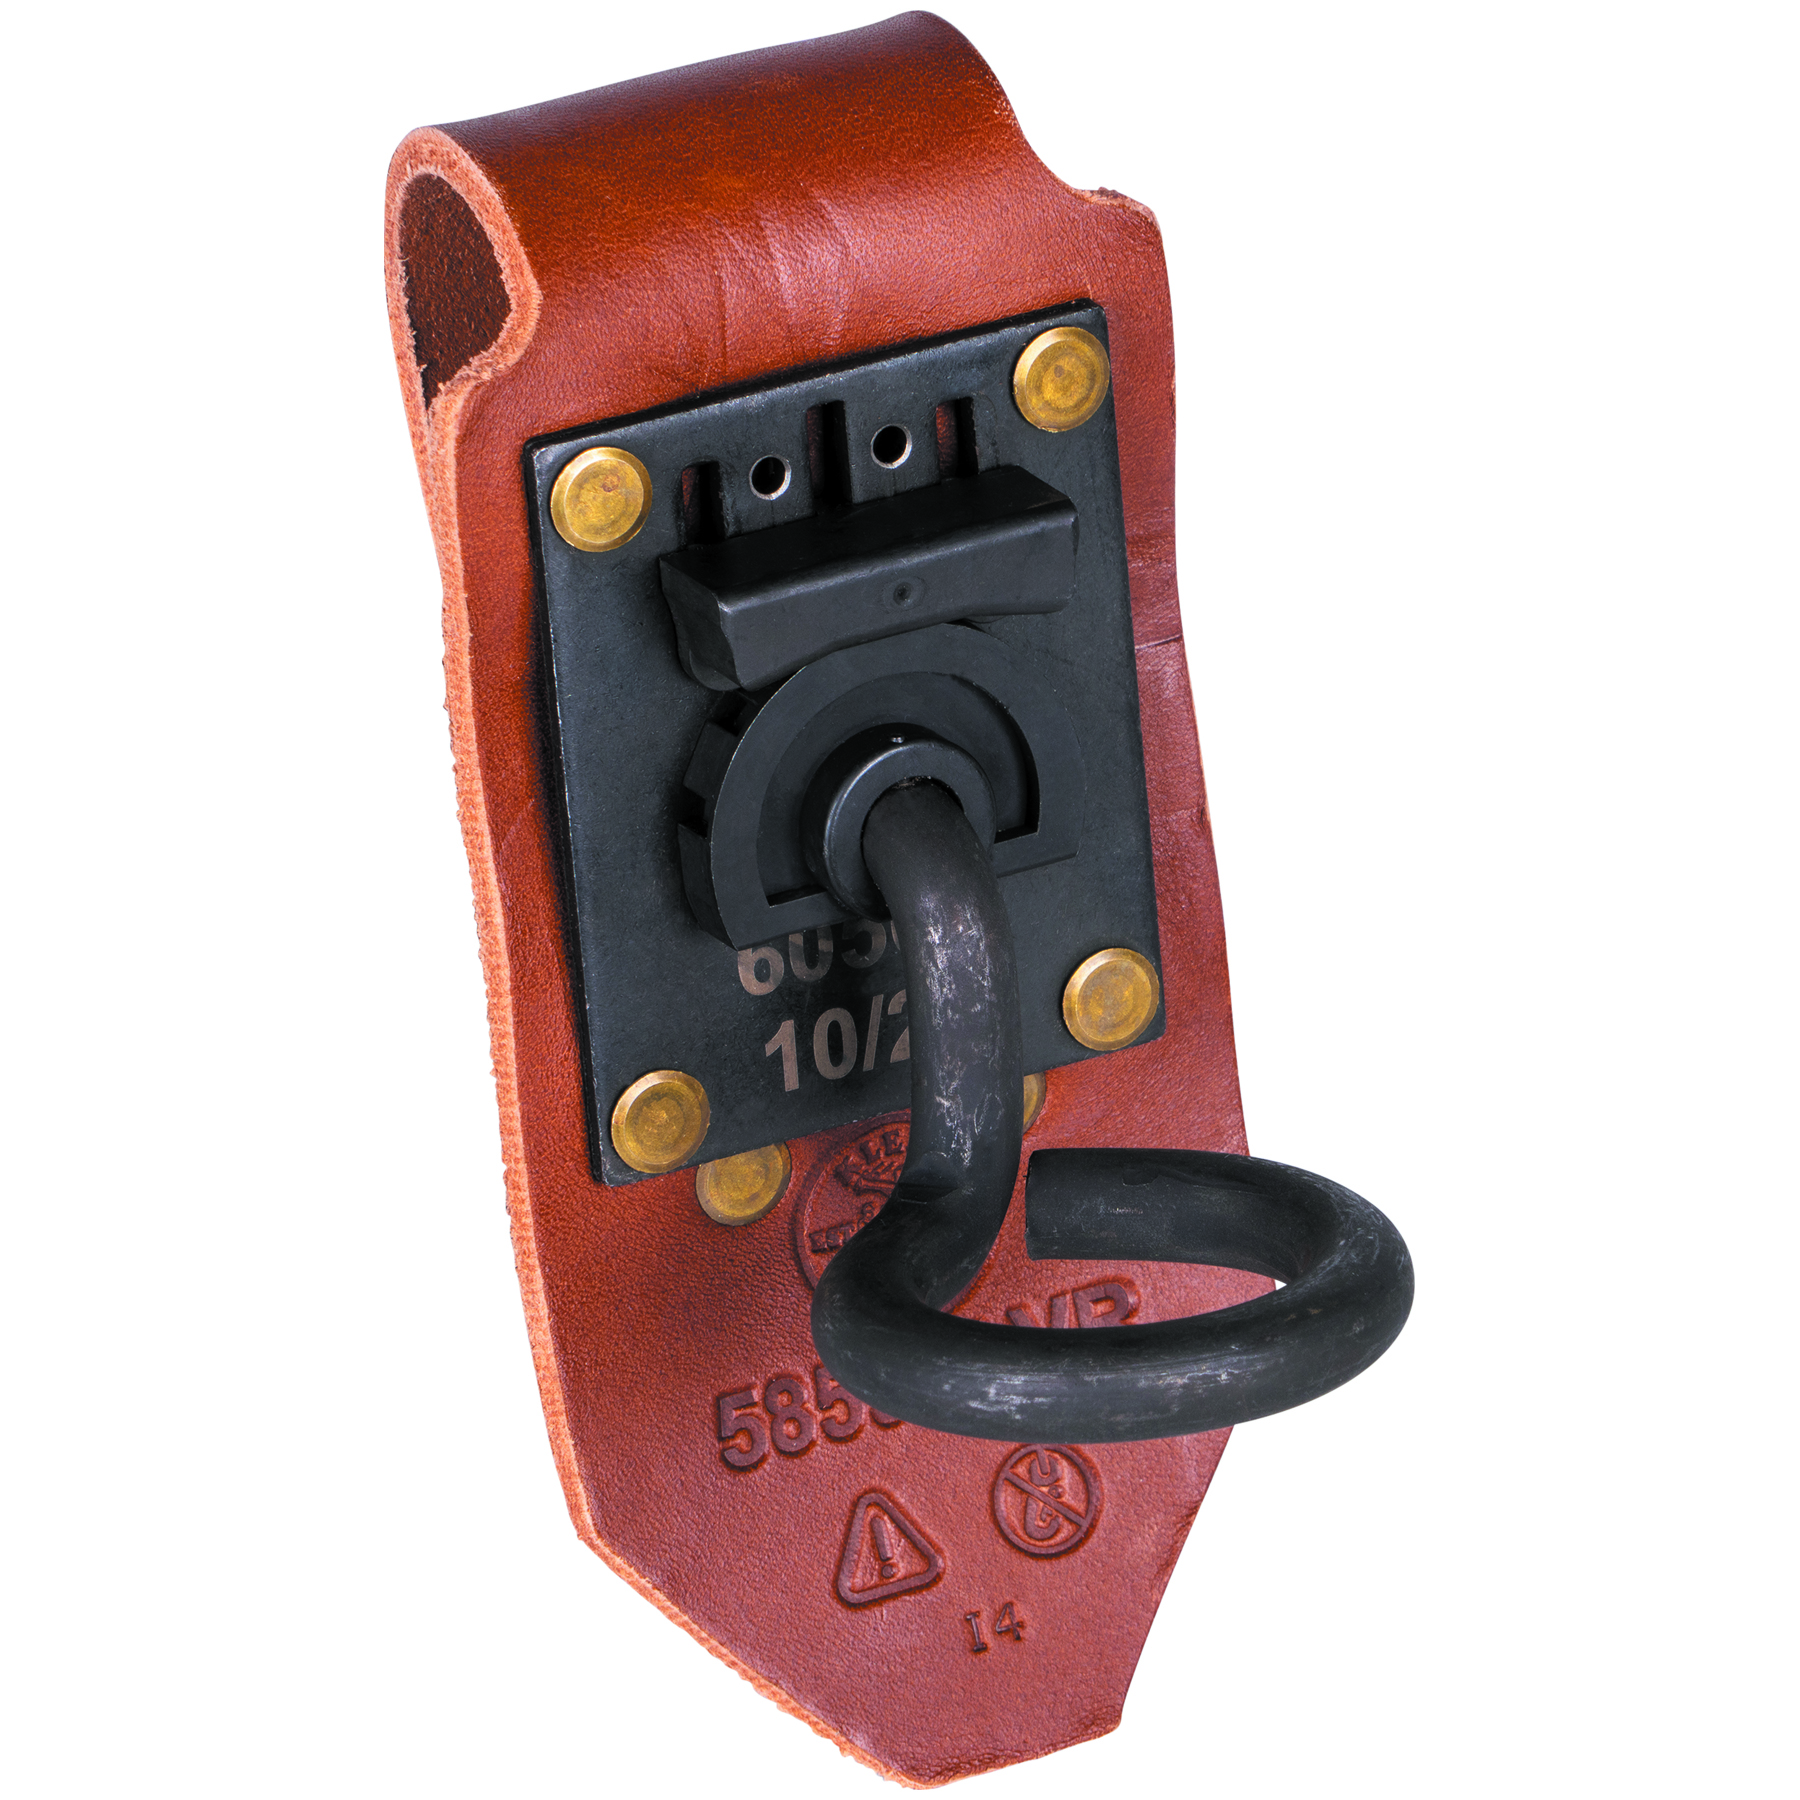 Adjustable Connecting Bar Holder - 5859SLVR | Klein Tools